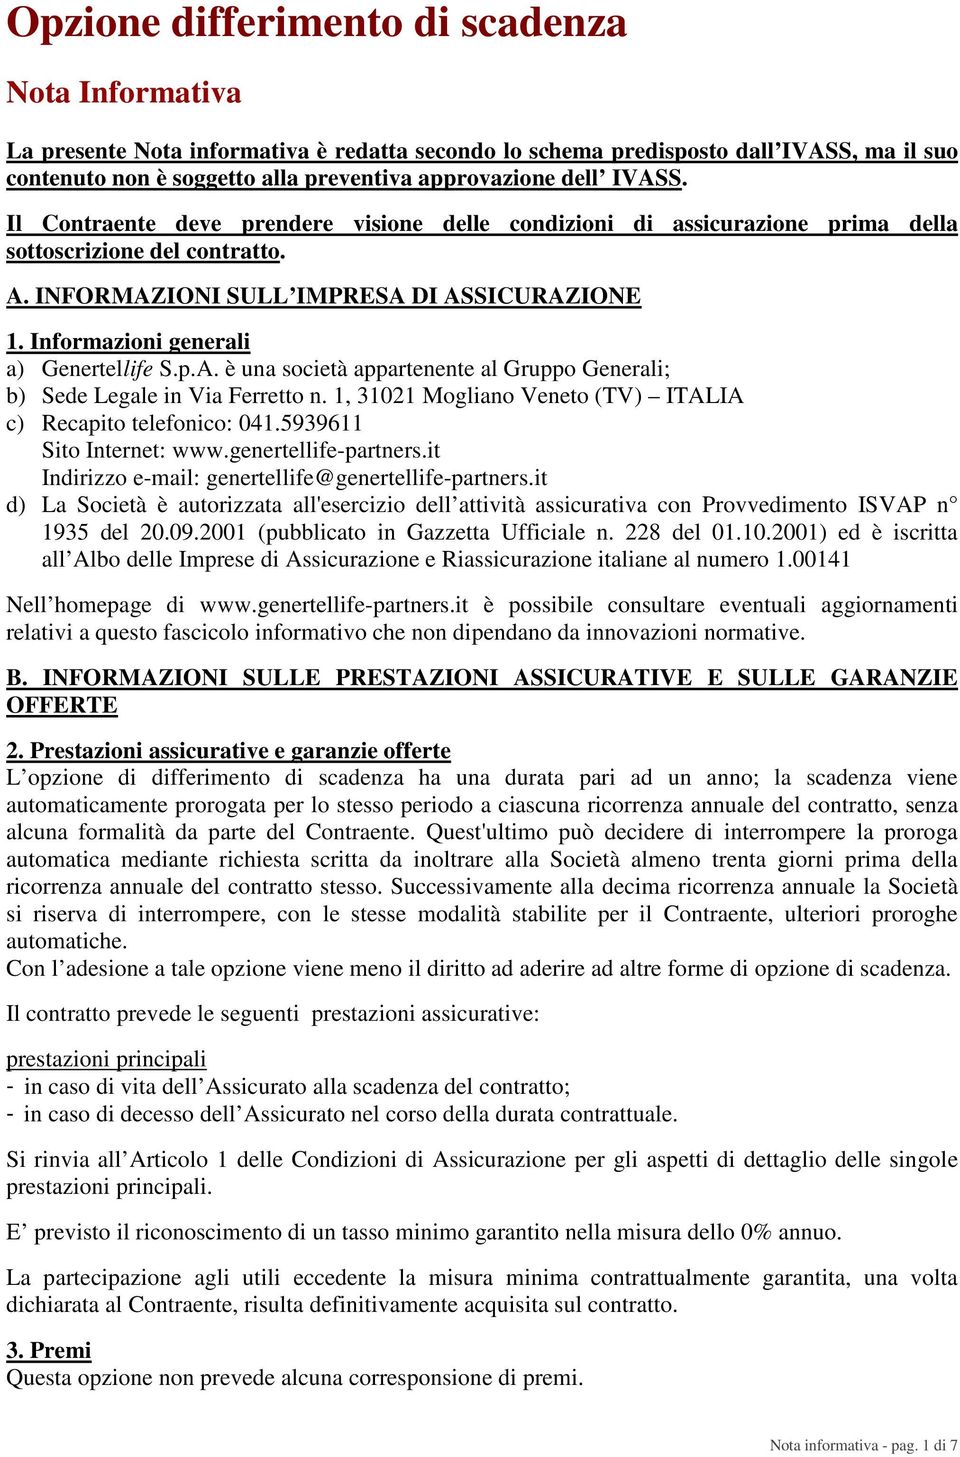 Informazioni generali a) Genertellife S.p.A. è una società appartenente al Gruppo Generali; b) Sede Legale in Via Ferretto n. 1, 31021 Mogliano Veneto (TV) ITALIA c) Recapito telefonico: 041.